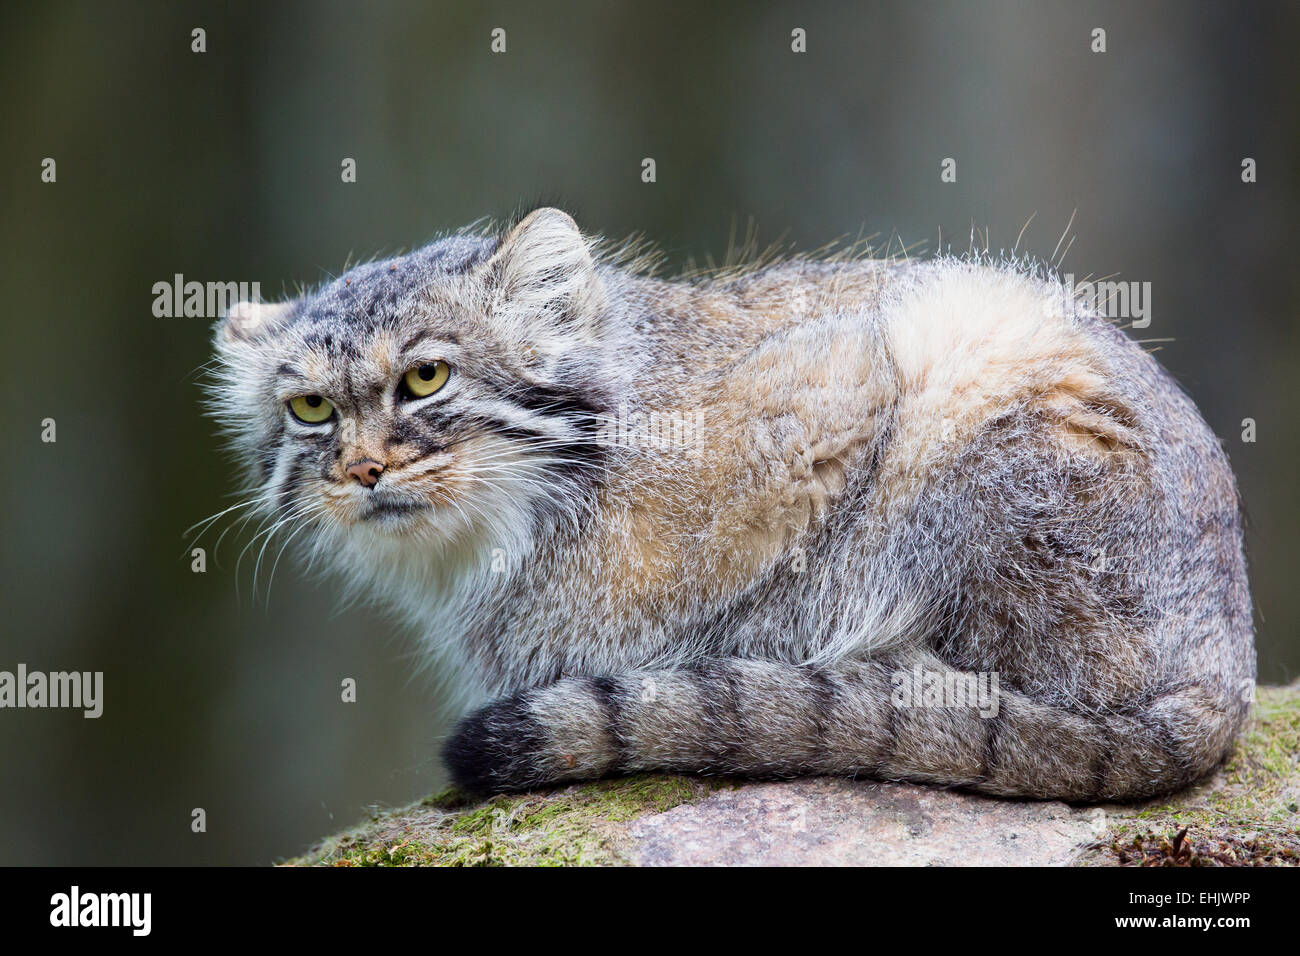 Le chat de Pallas, ou MANUL, vit dans le froid et de steppes arides d'Asie centrale. L'hiver la température peut descendre jusqu'à 50 degrés au-dessous de zer Banque D'Images